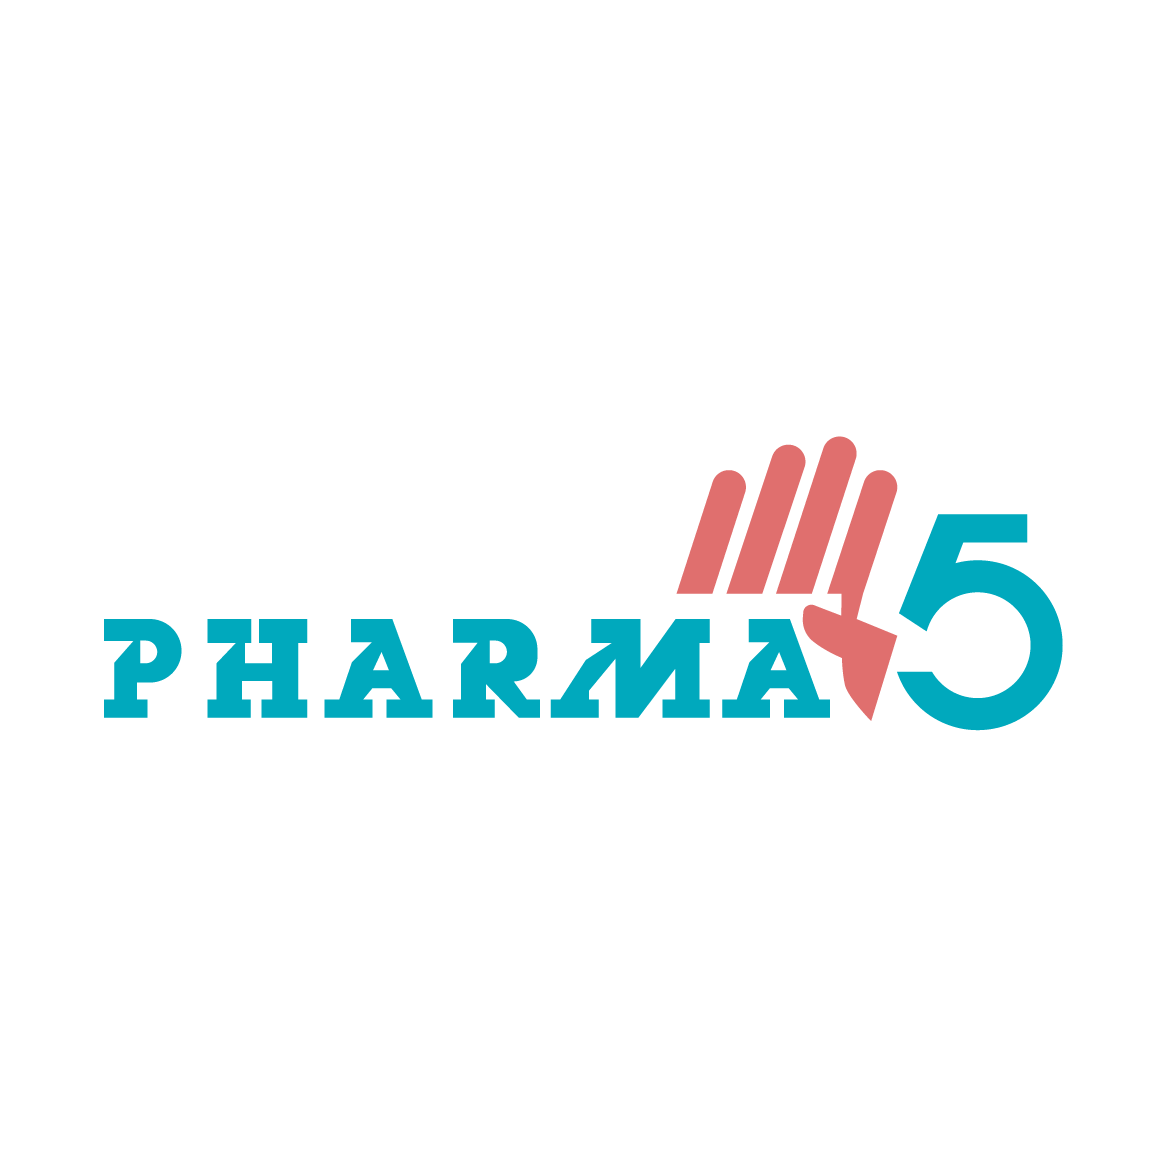 pharma 5